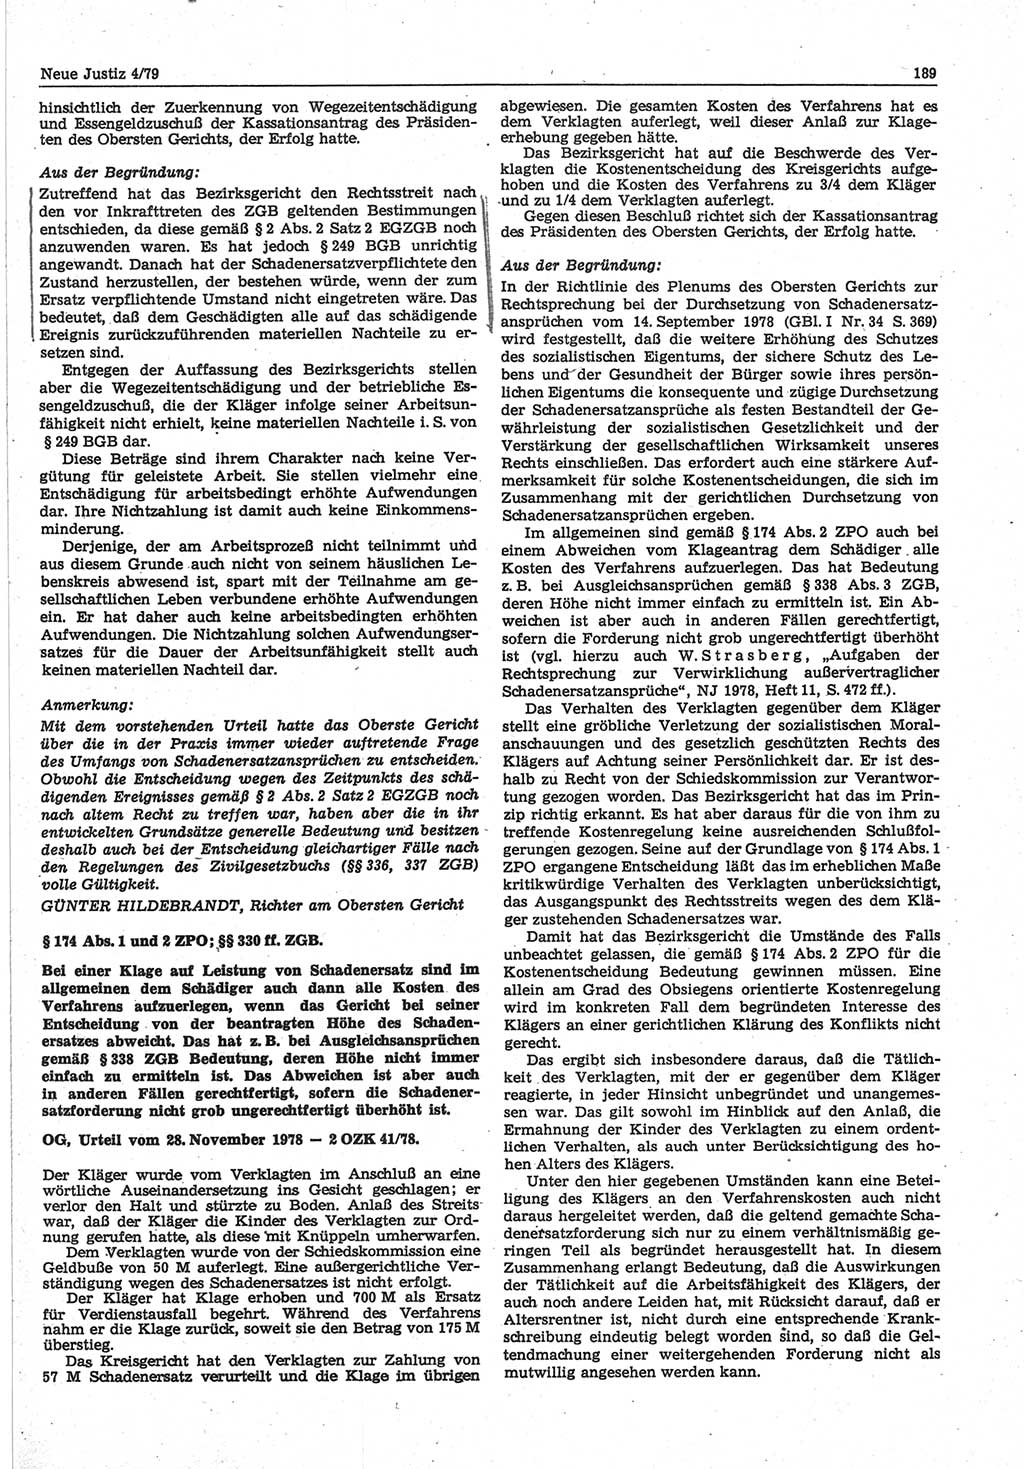 Neue Justiz (NJ), Zeitschrift für sozialistisches Recht und Gesetzlichkeit [Deutsche Demokratische Republik (DDR)], 33. Jahrgang 1979, Seite 189 (NJ DDR 1979, S. 189)